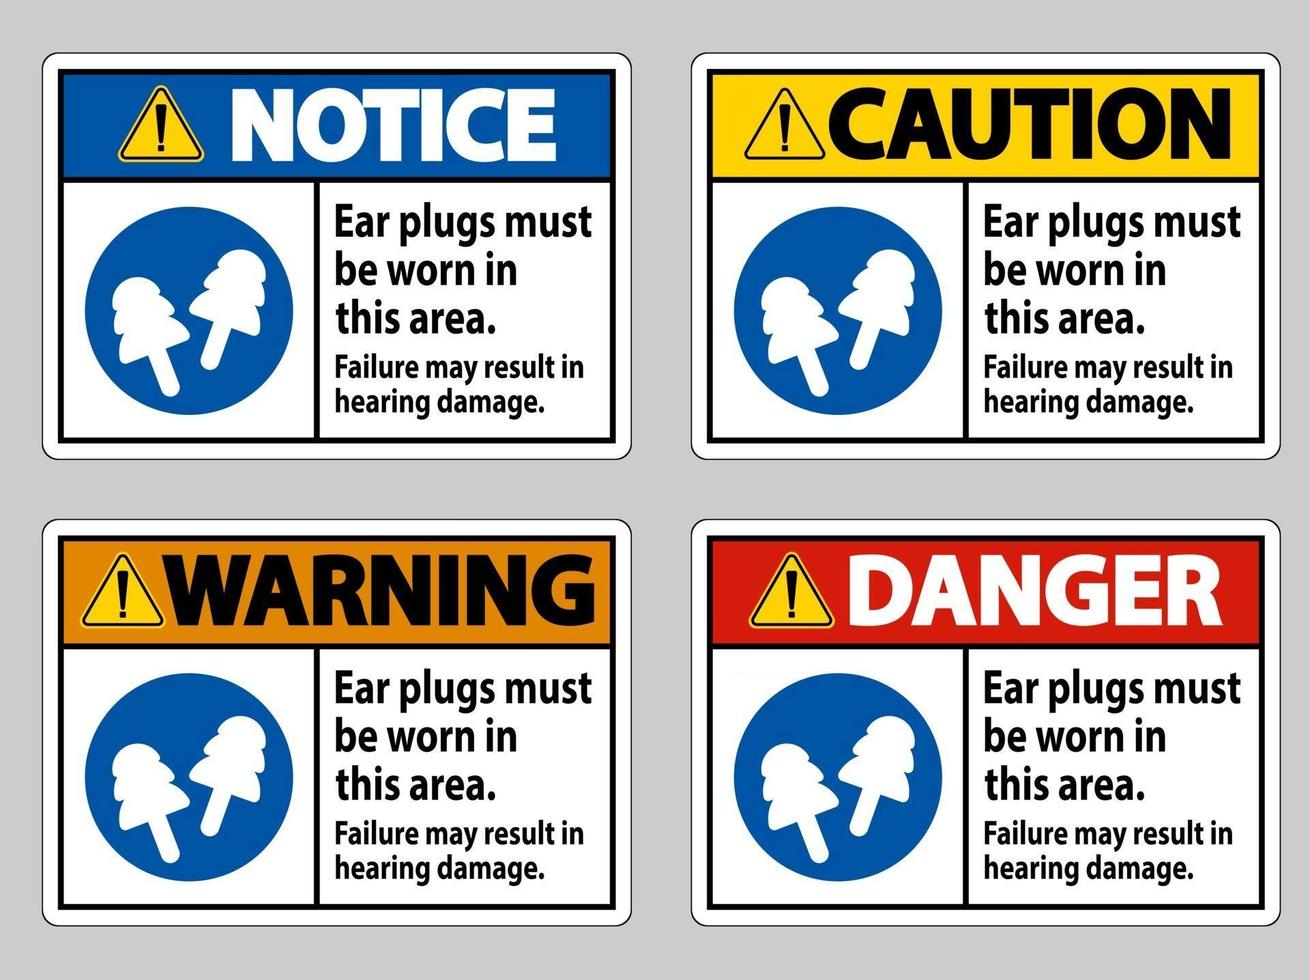 Tampões de ouvido devem ser usados nesta área, a falha pode resultar em danos à audição vetor